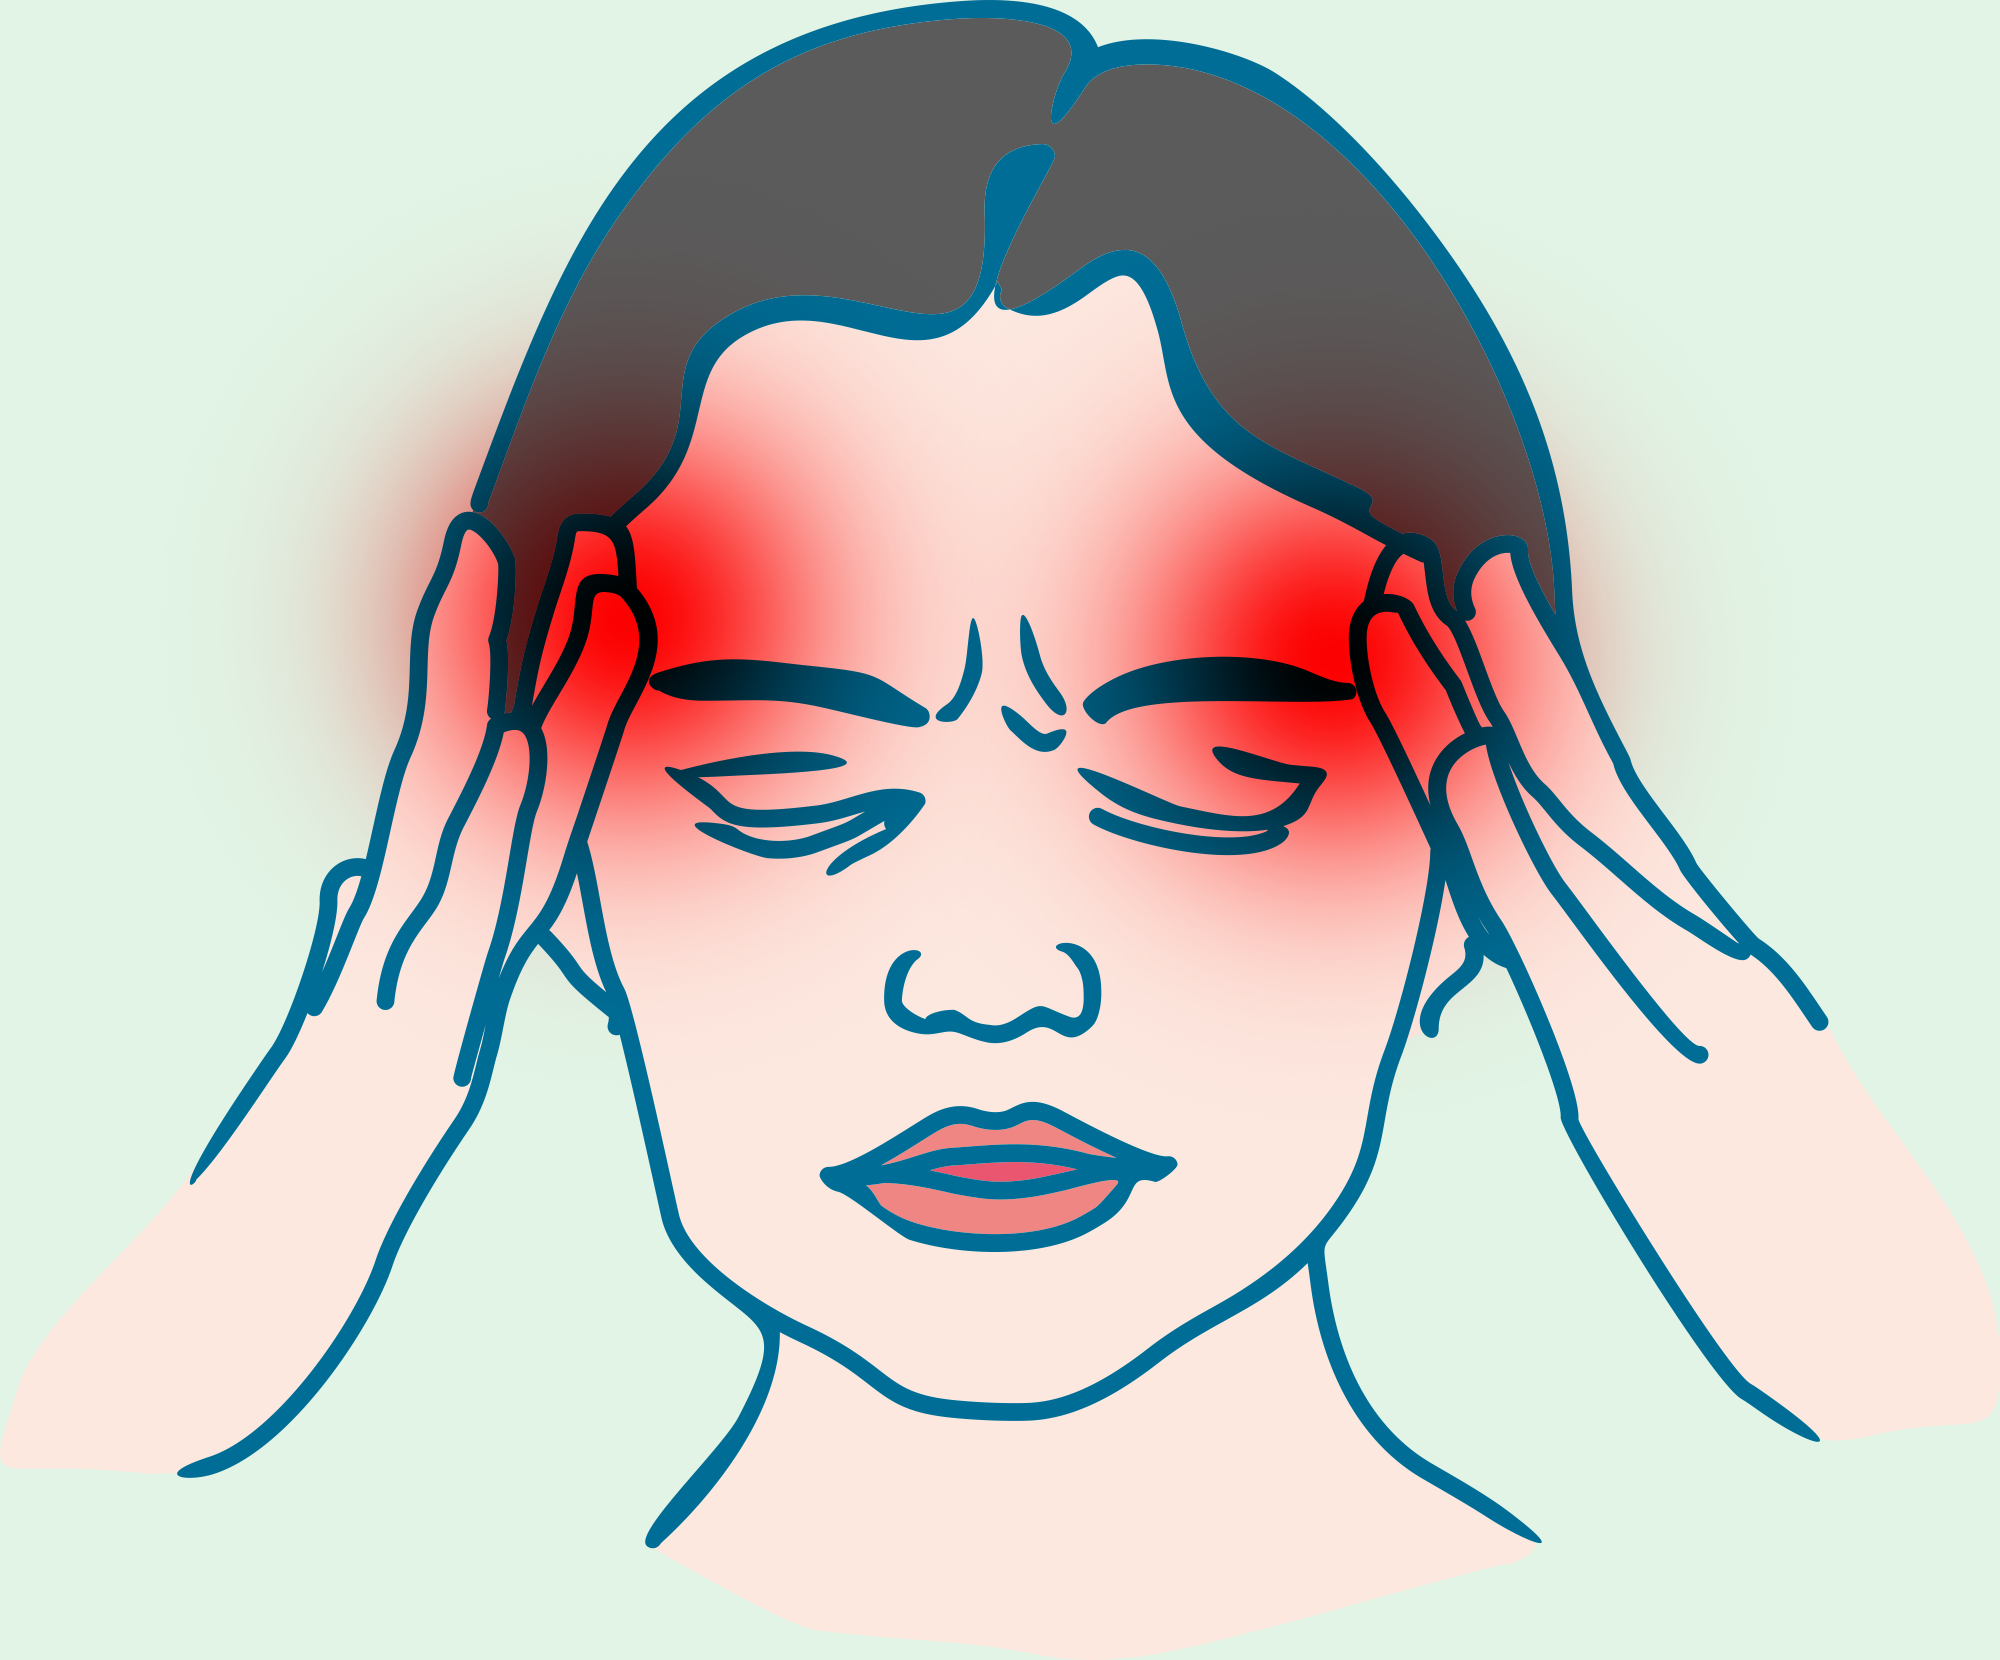 Severe headaches, recurrent migraines, neck stiffness